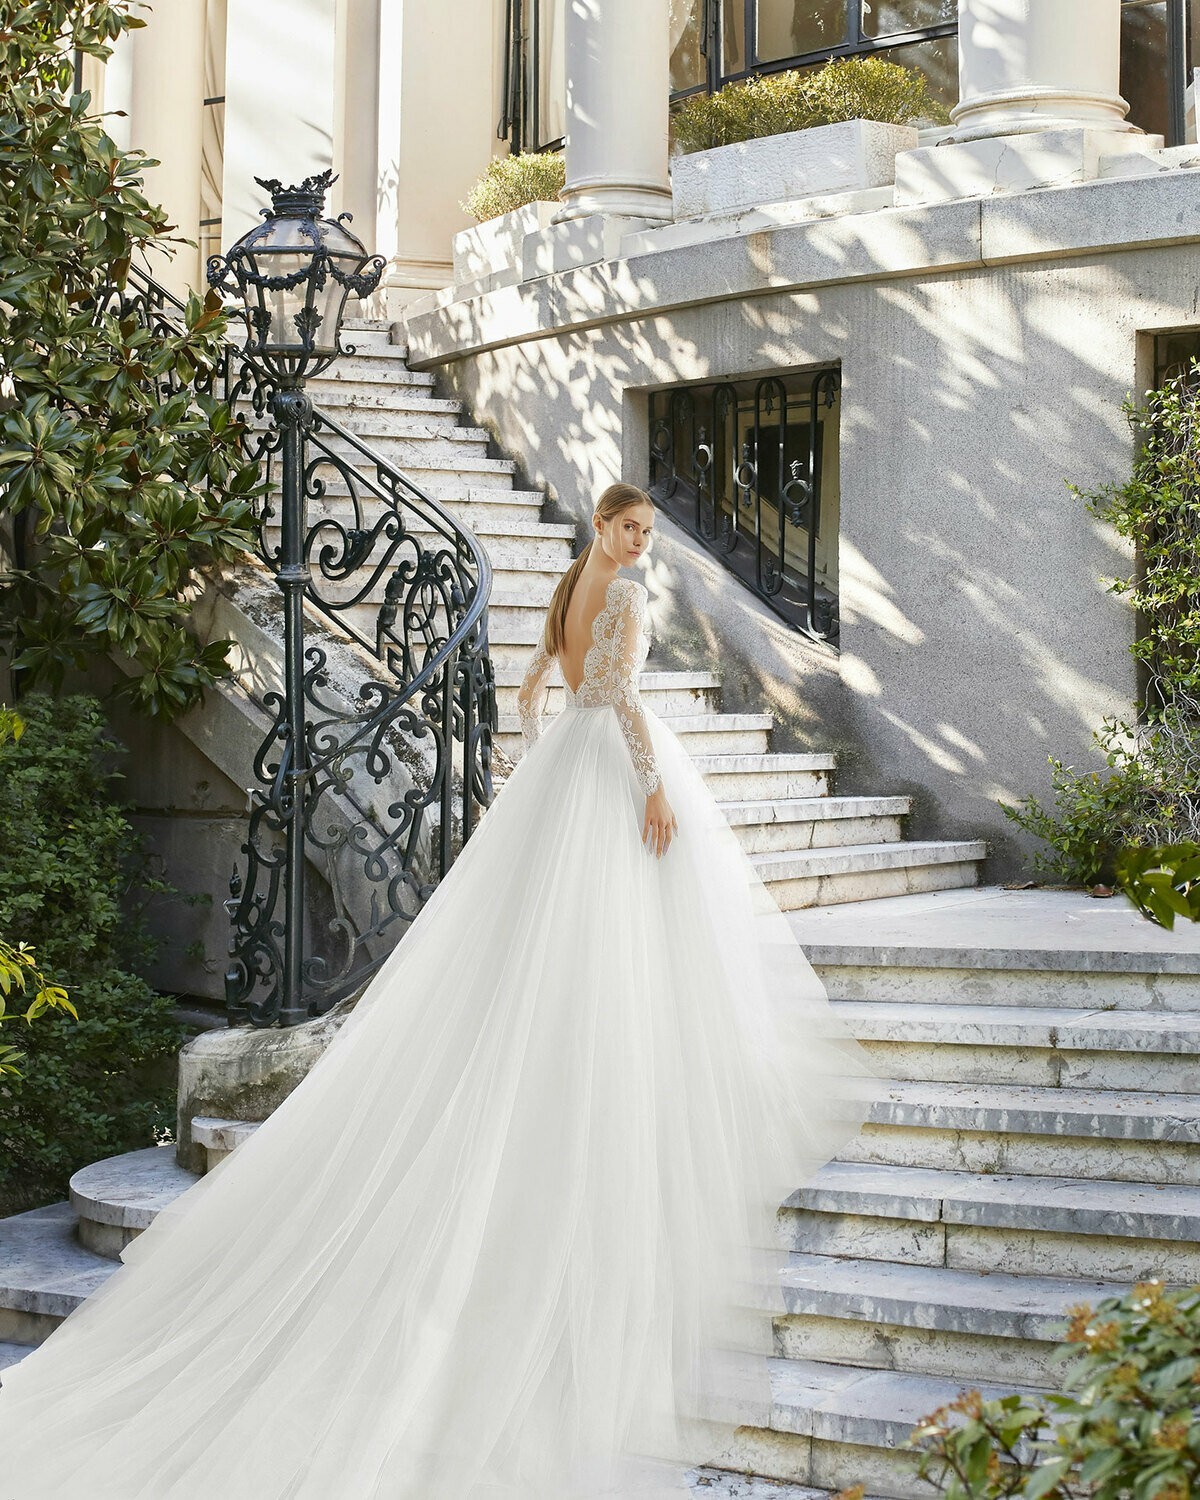 NIHER - abito da sposa collezione 2020 - Rosa Clarà Couture